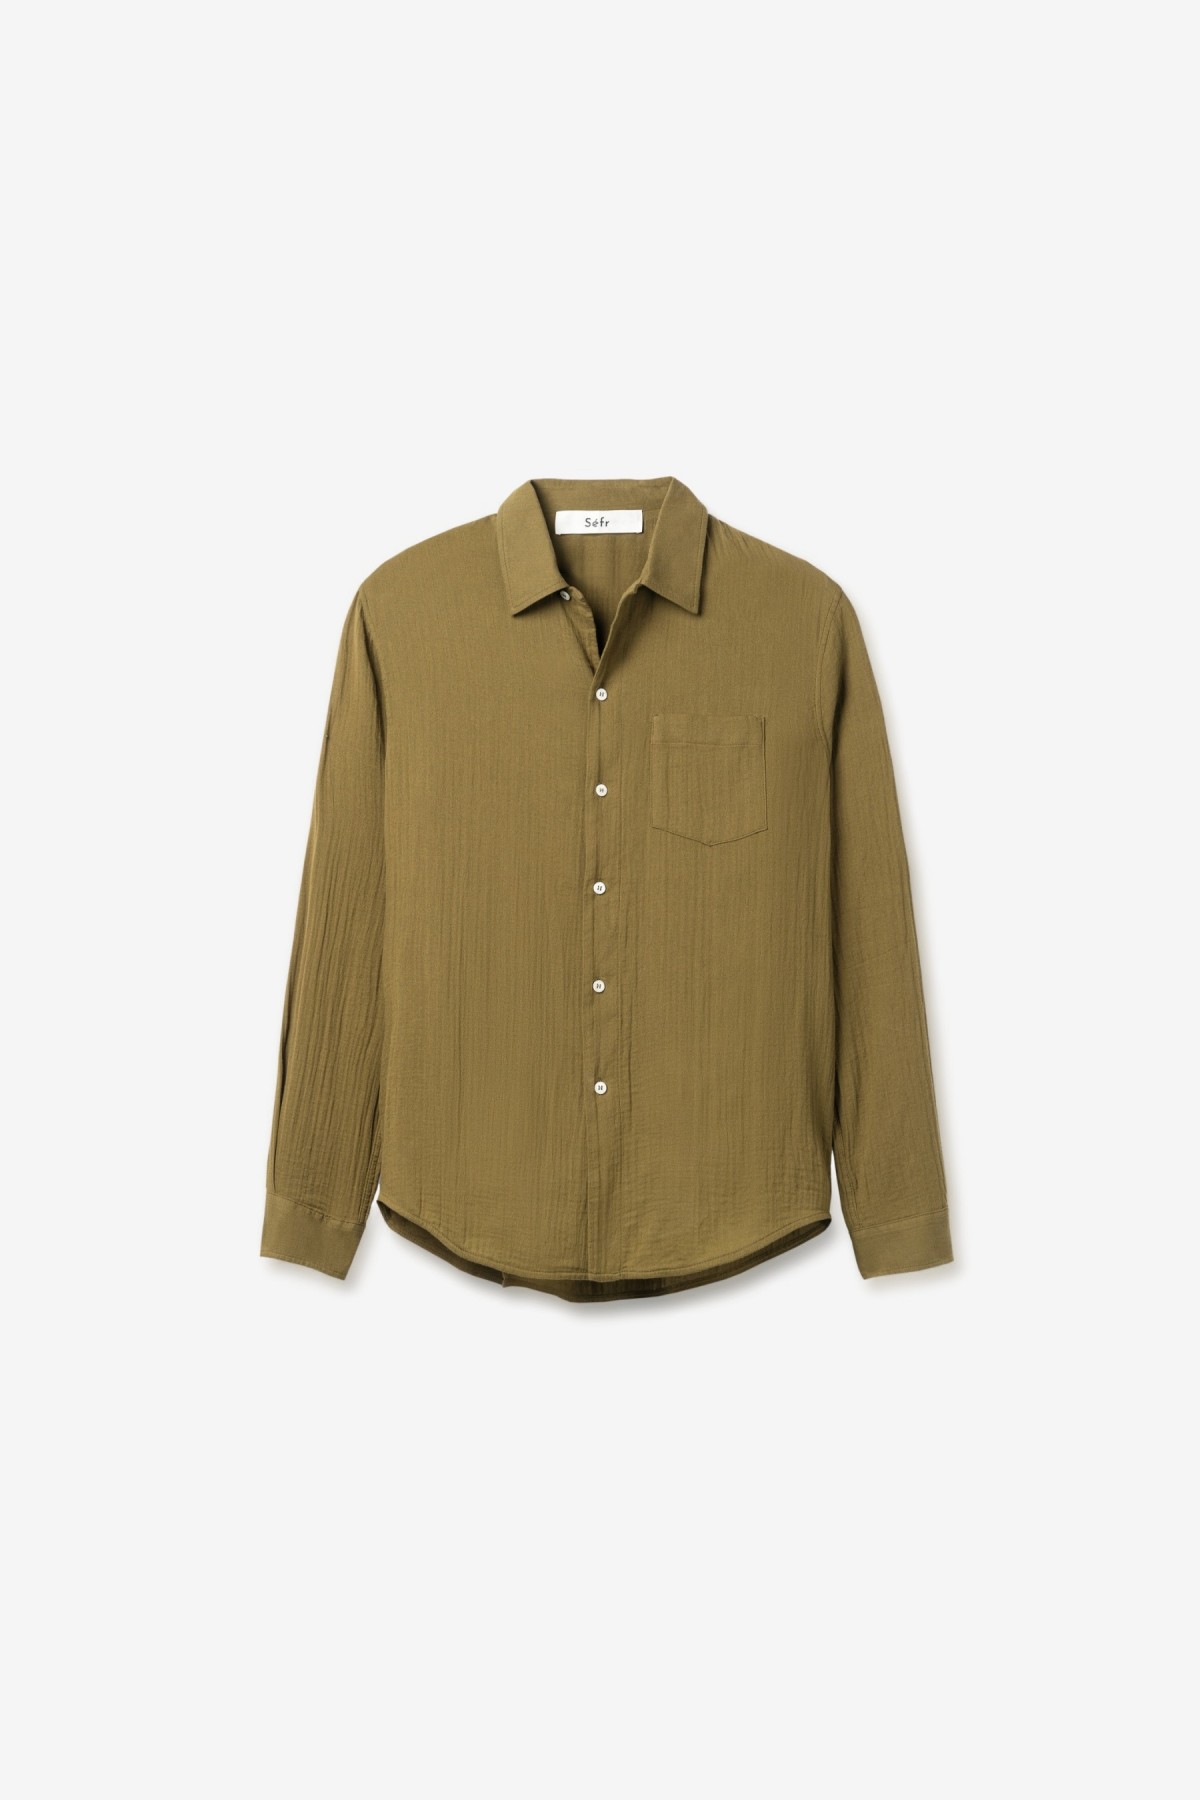 Séfr Leo Shirt in Moss Green